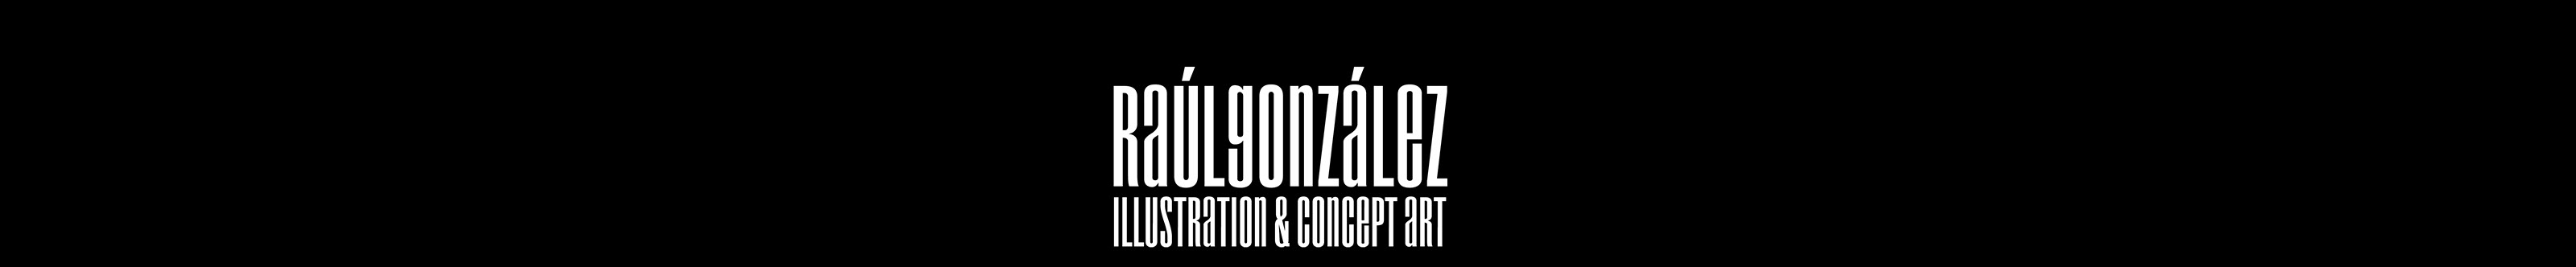 Raúl González's profile banner